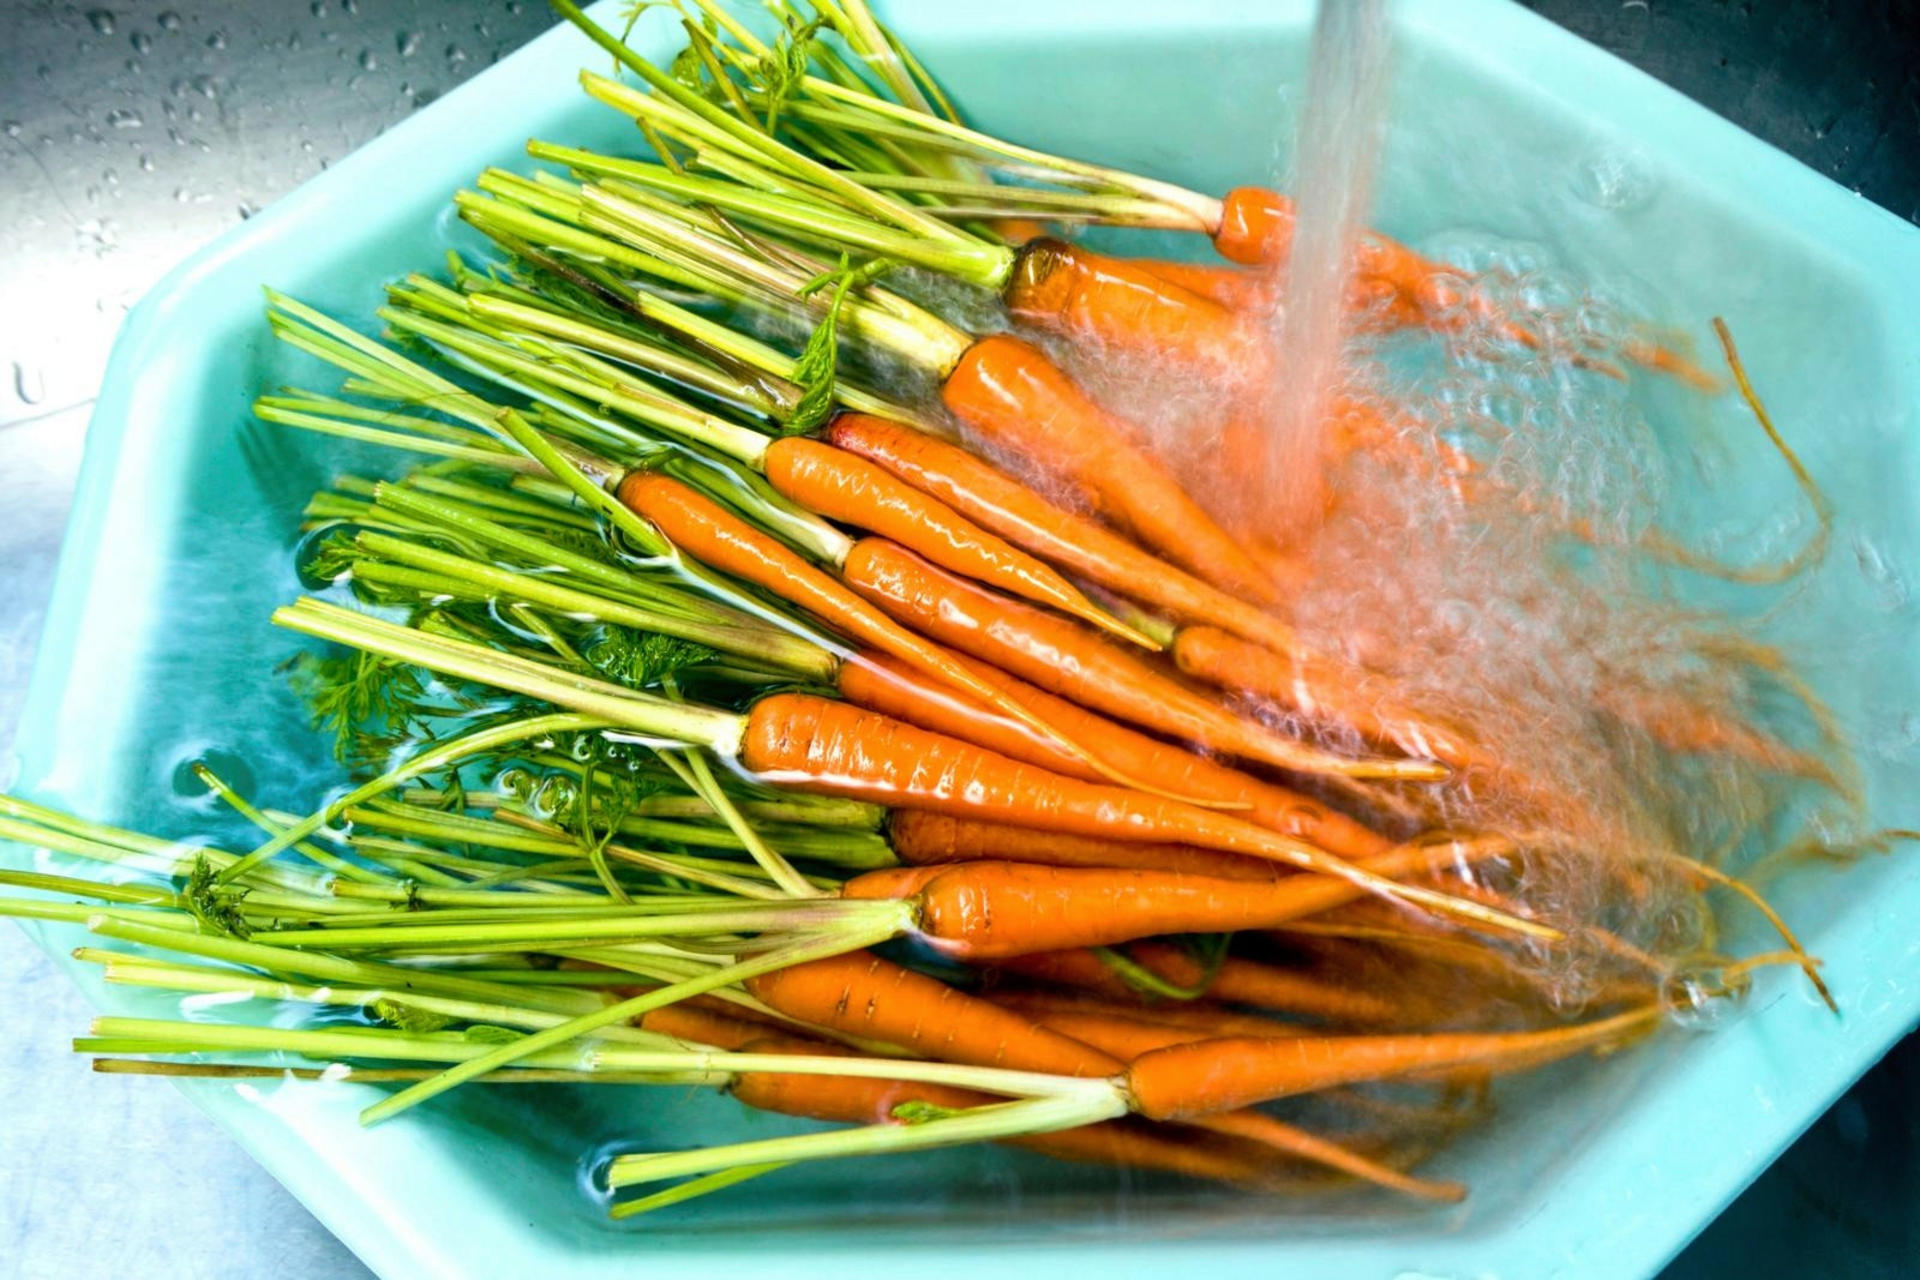 De nombreuses carottes dans un bassin sont recouvertes d'eau